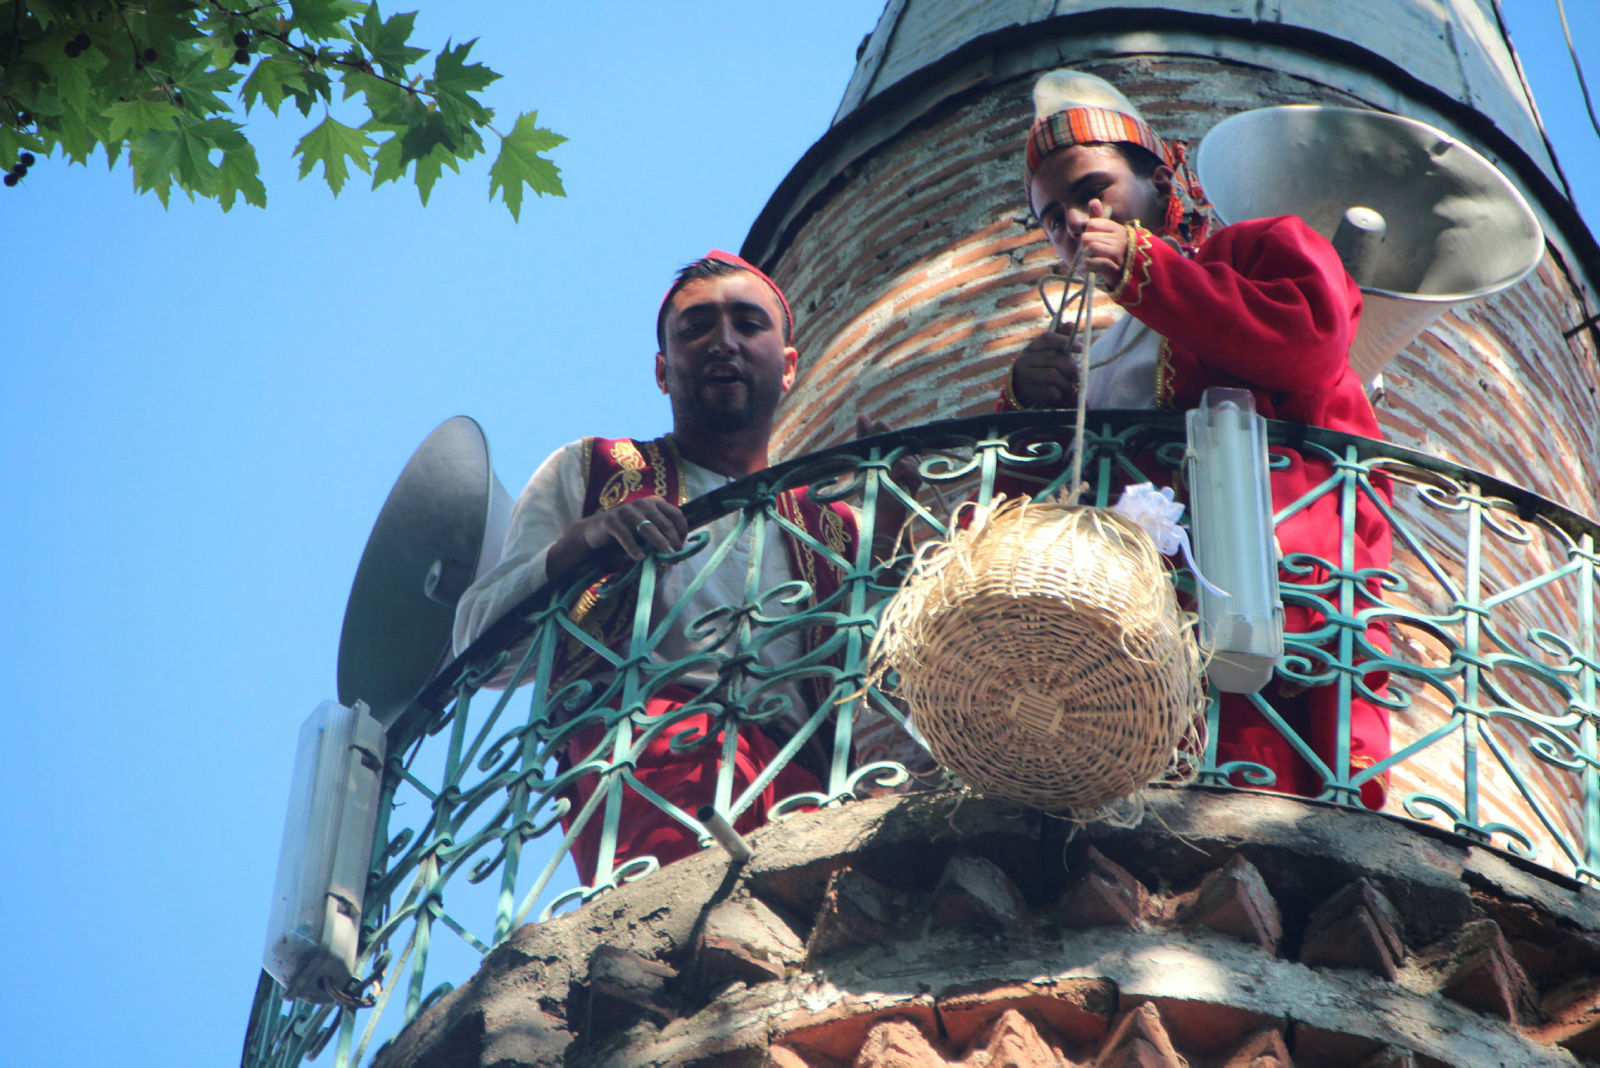 Osmanlı’dan gelen minare şerefesinden sepetle şeker sarkıtma geleneği sürüyor